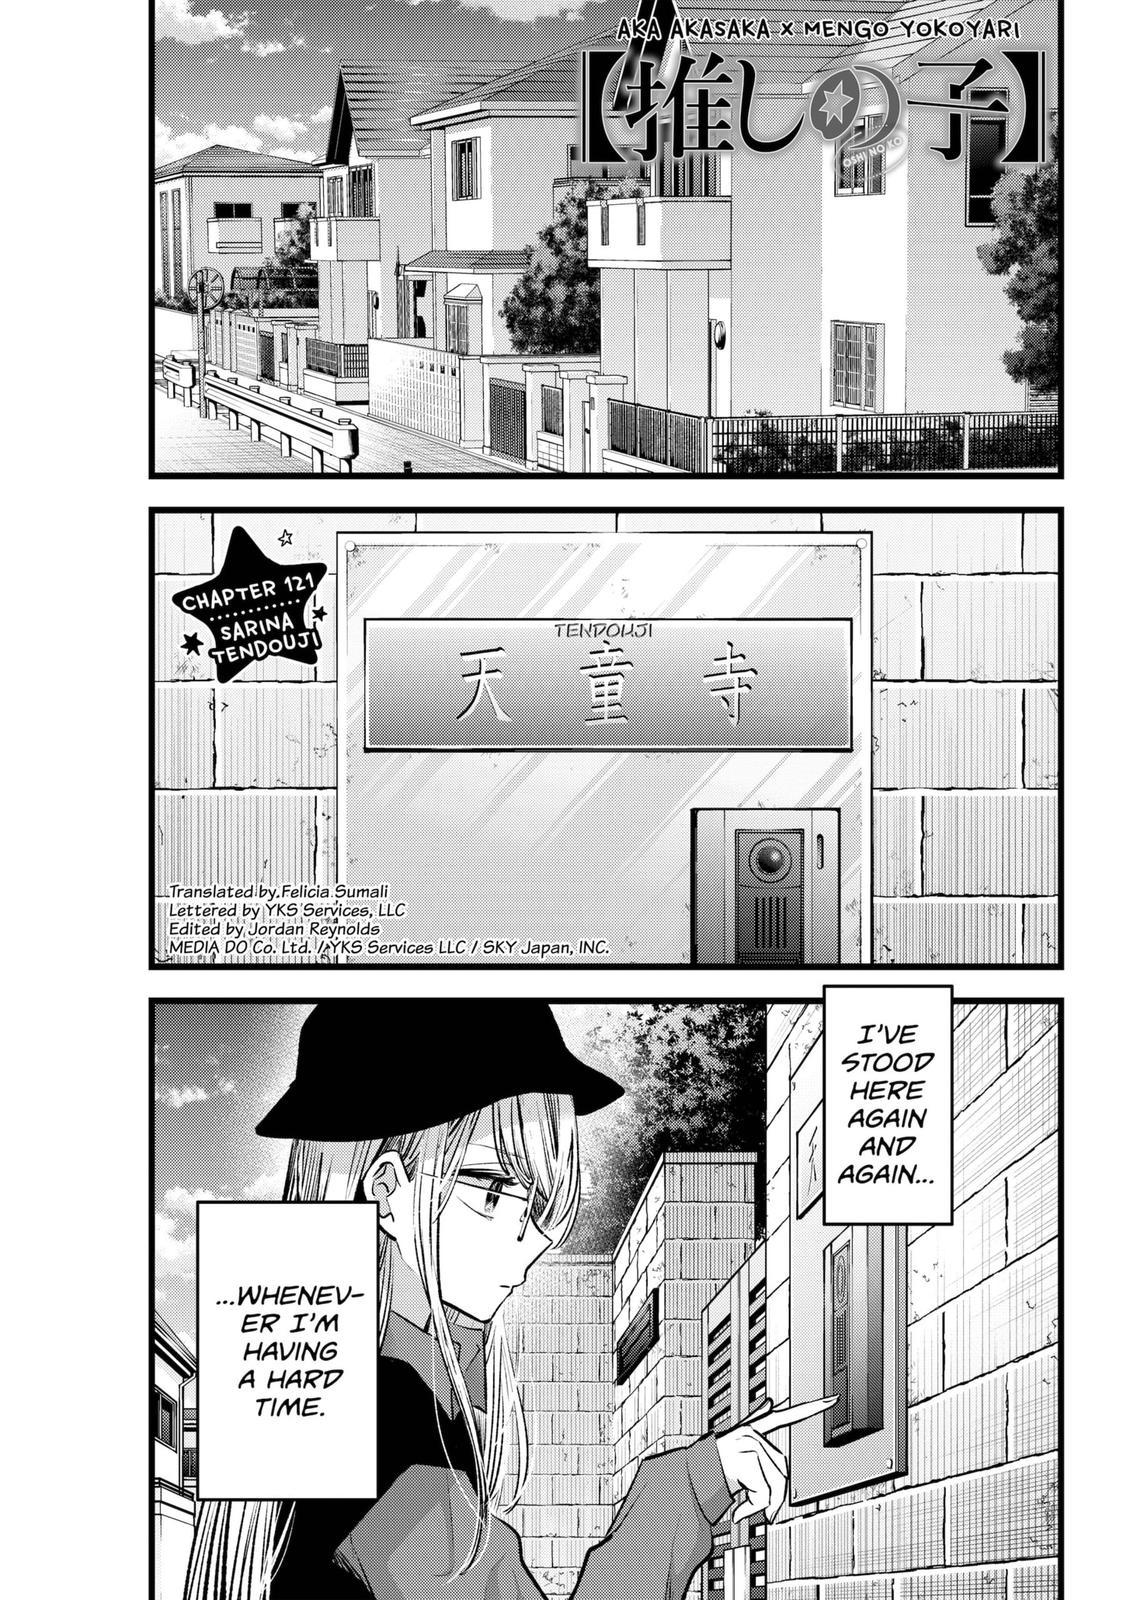 Oshi no ko, Chapter 126 - Oshi no ko Manga Online